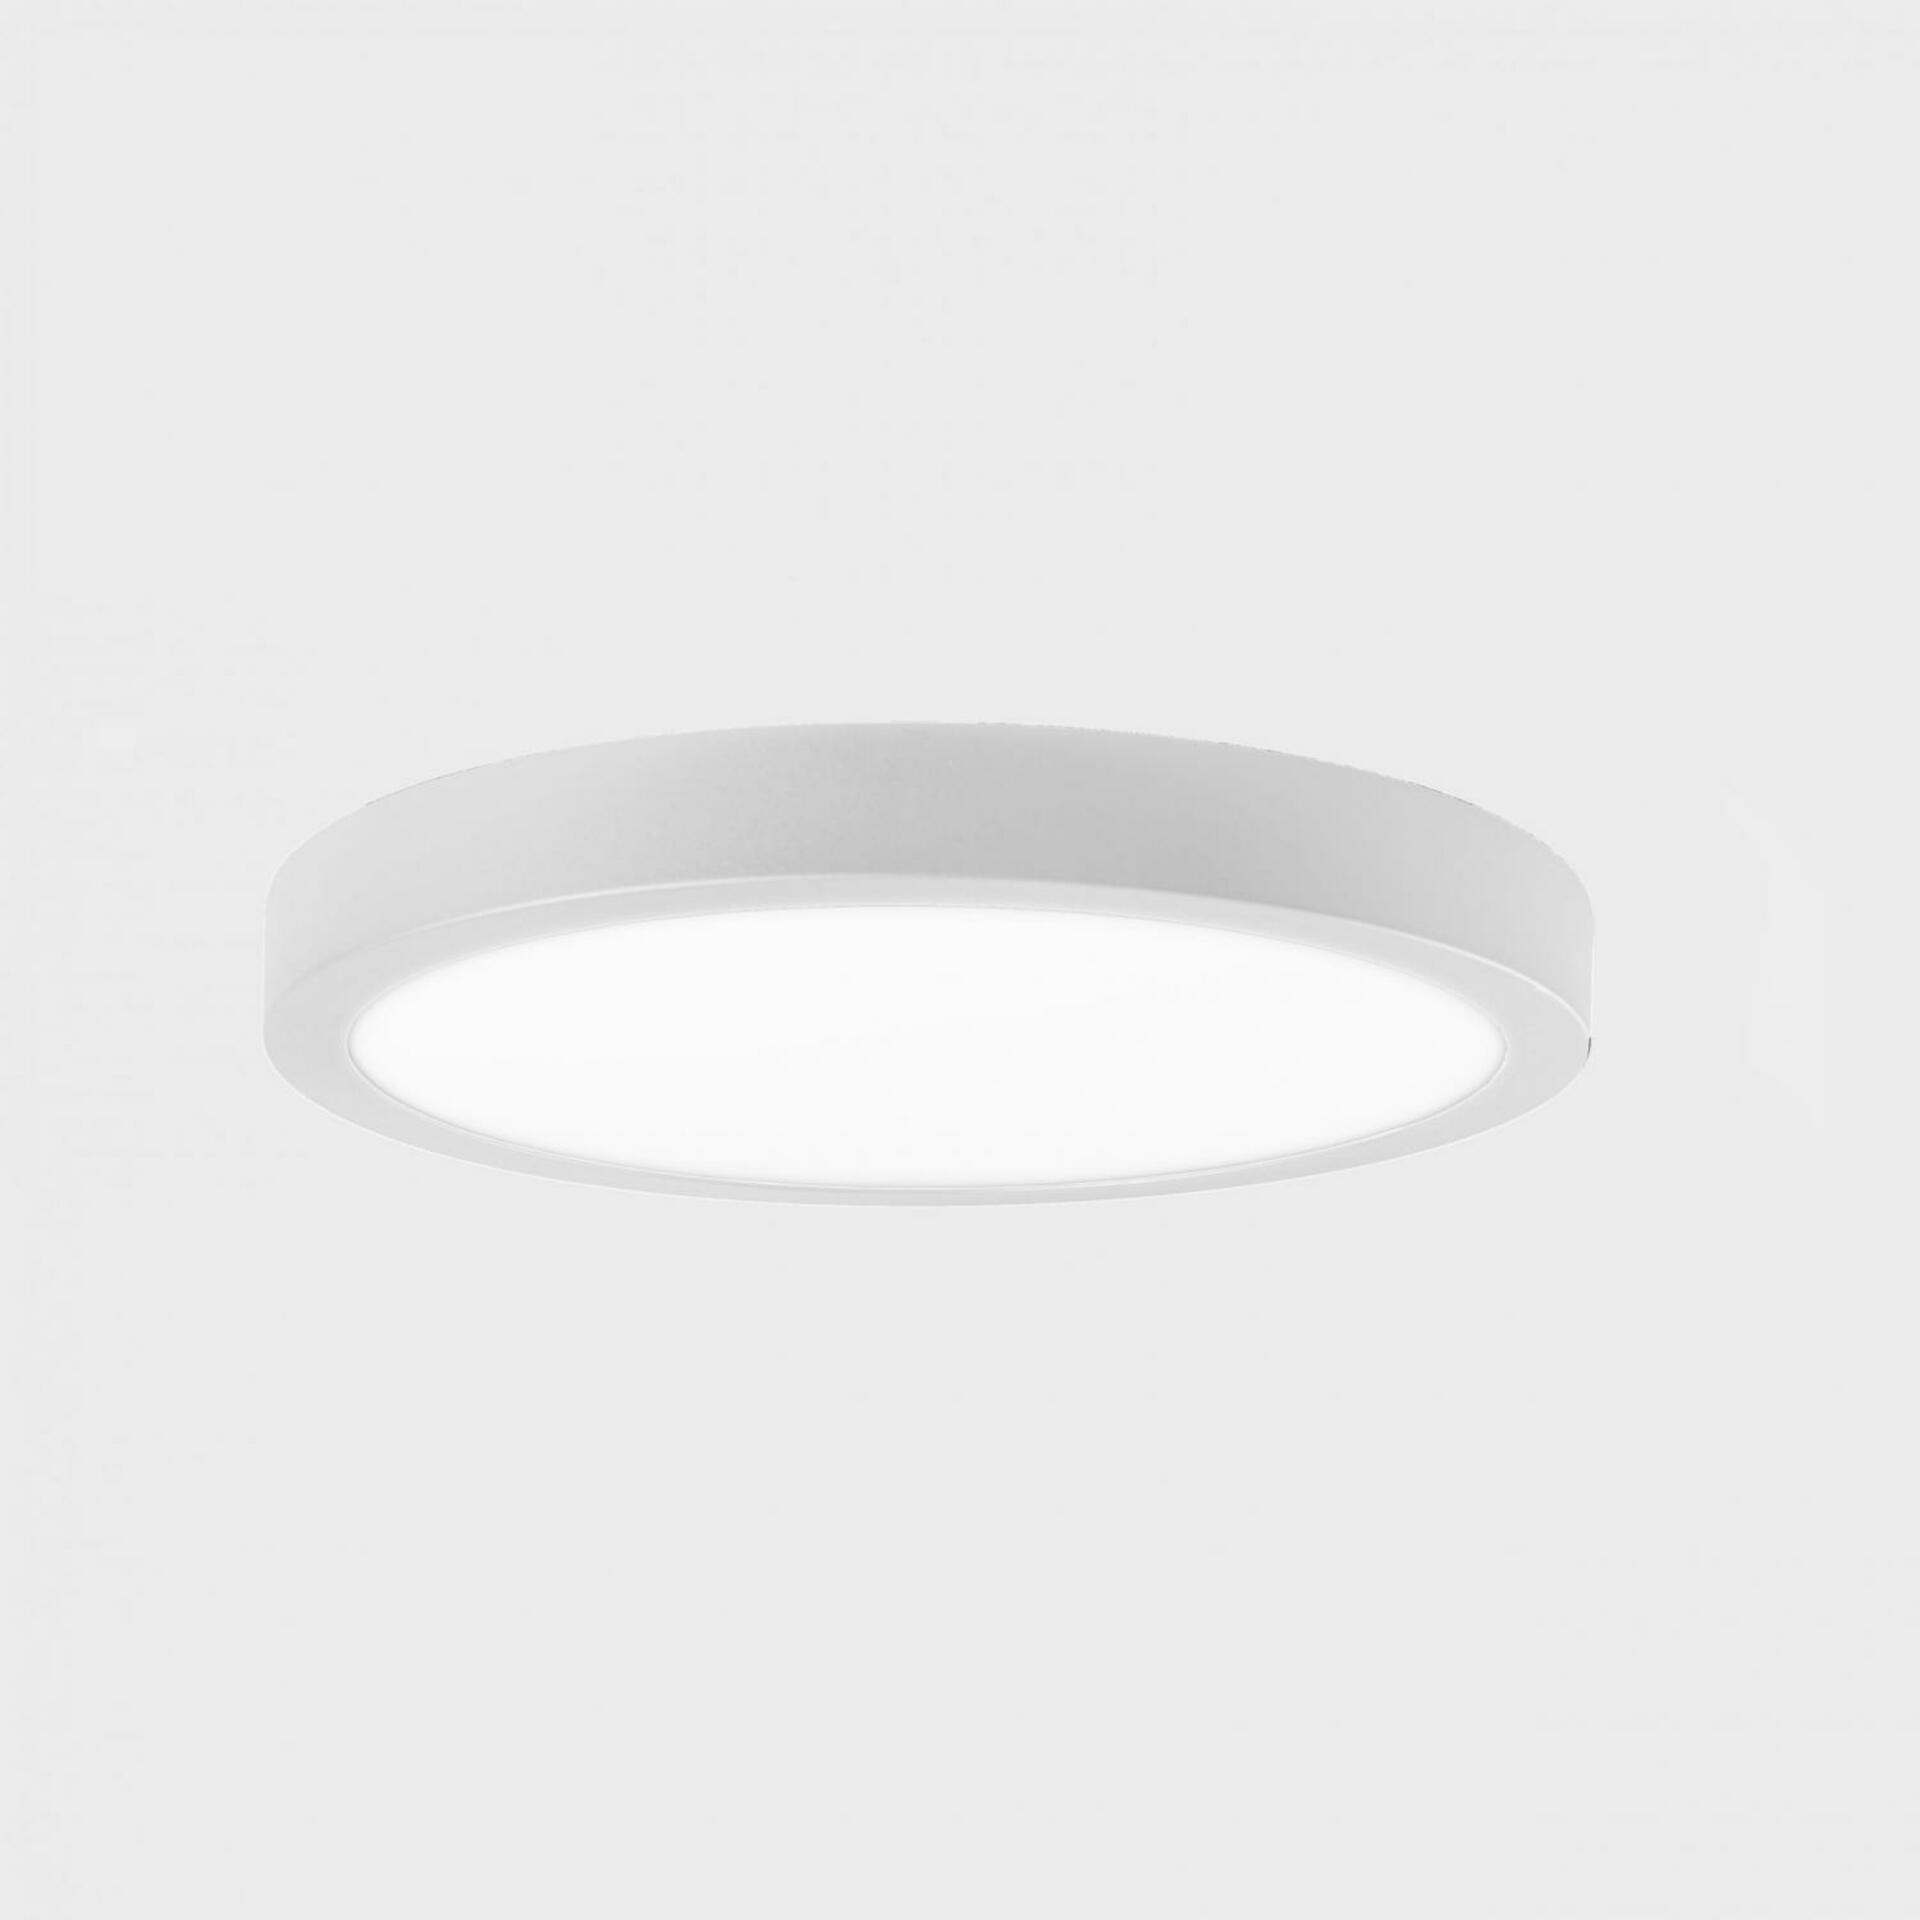 KOHL LIGHTING KOHL-Lighting DISC SLIM stropní svítidlo pr. 500 mm bílá 48 W CRI 80 3000K Non-Dimm